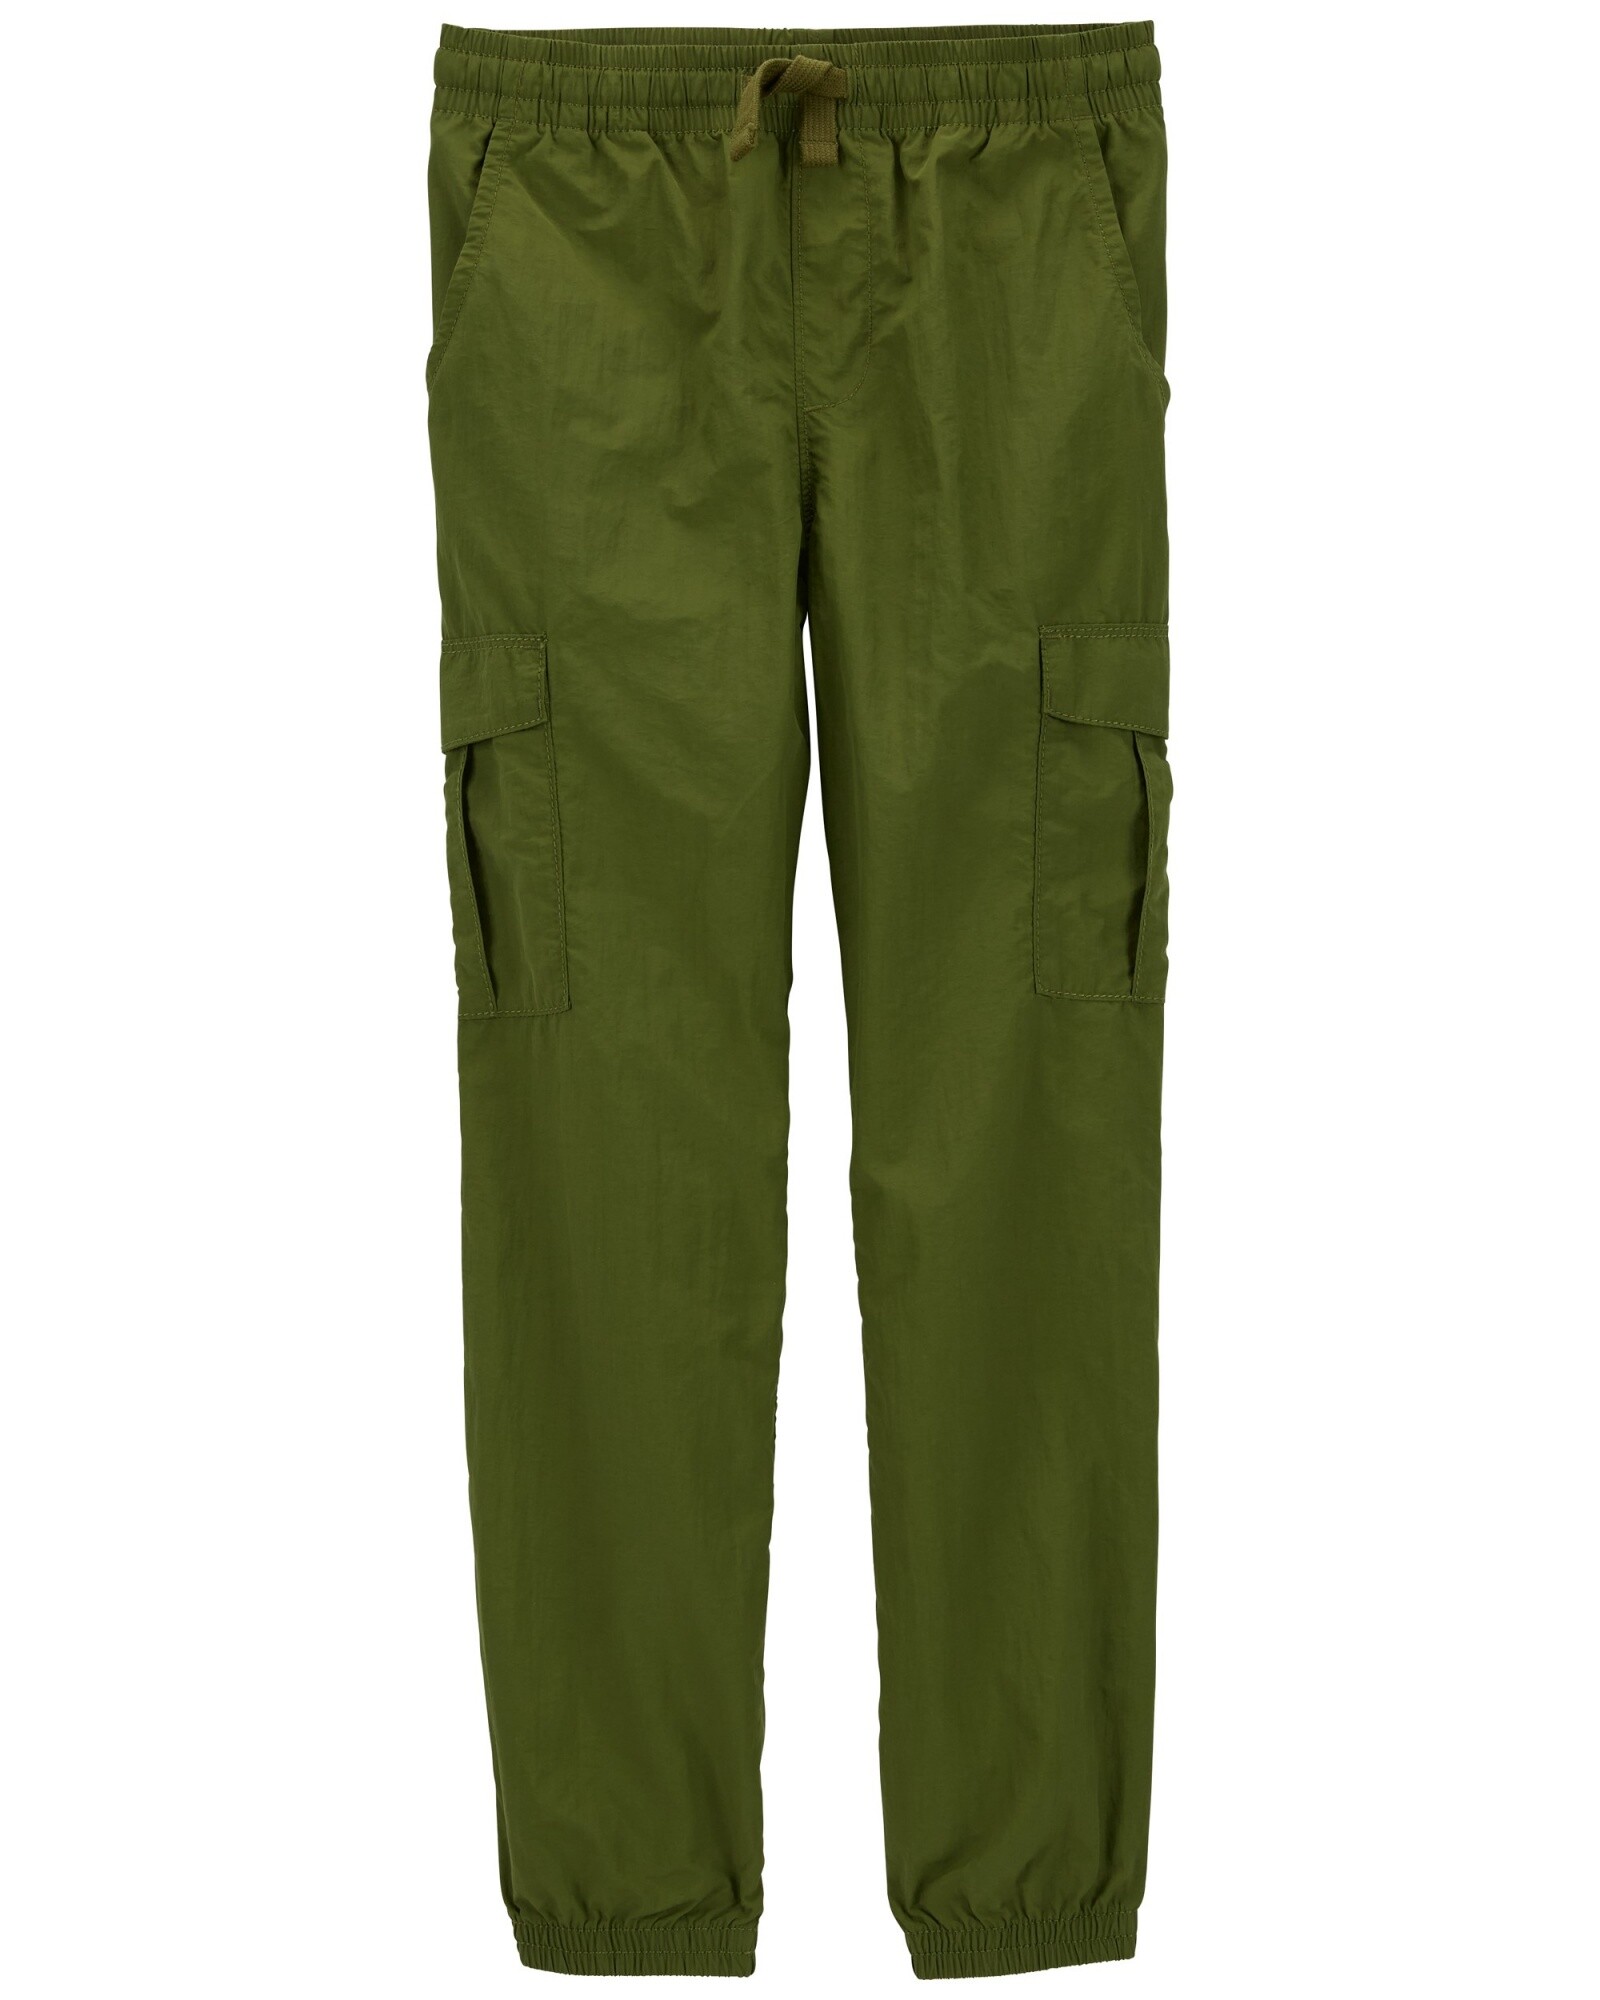 Pantalón deportivo de nylon, verde. Talles 6-8 Sin color